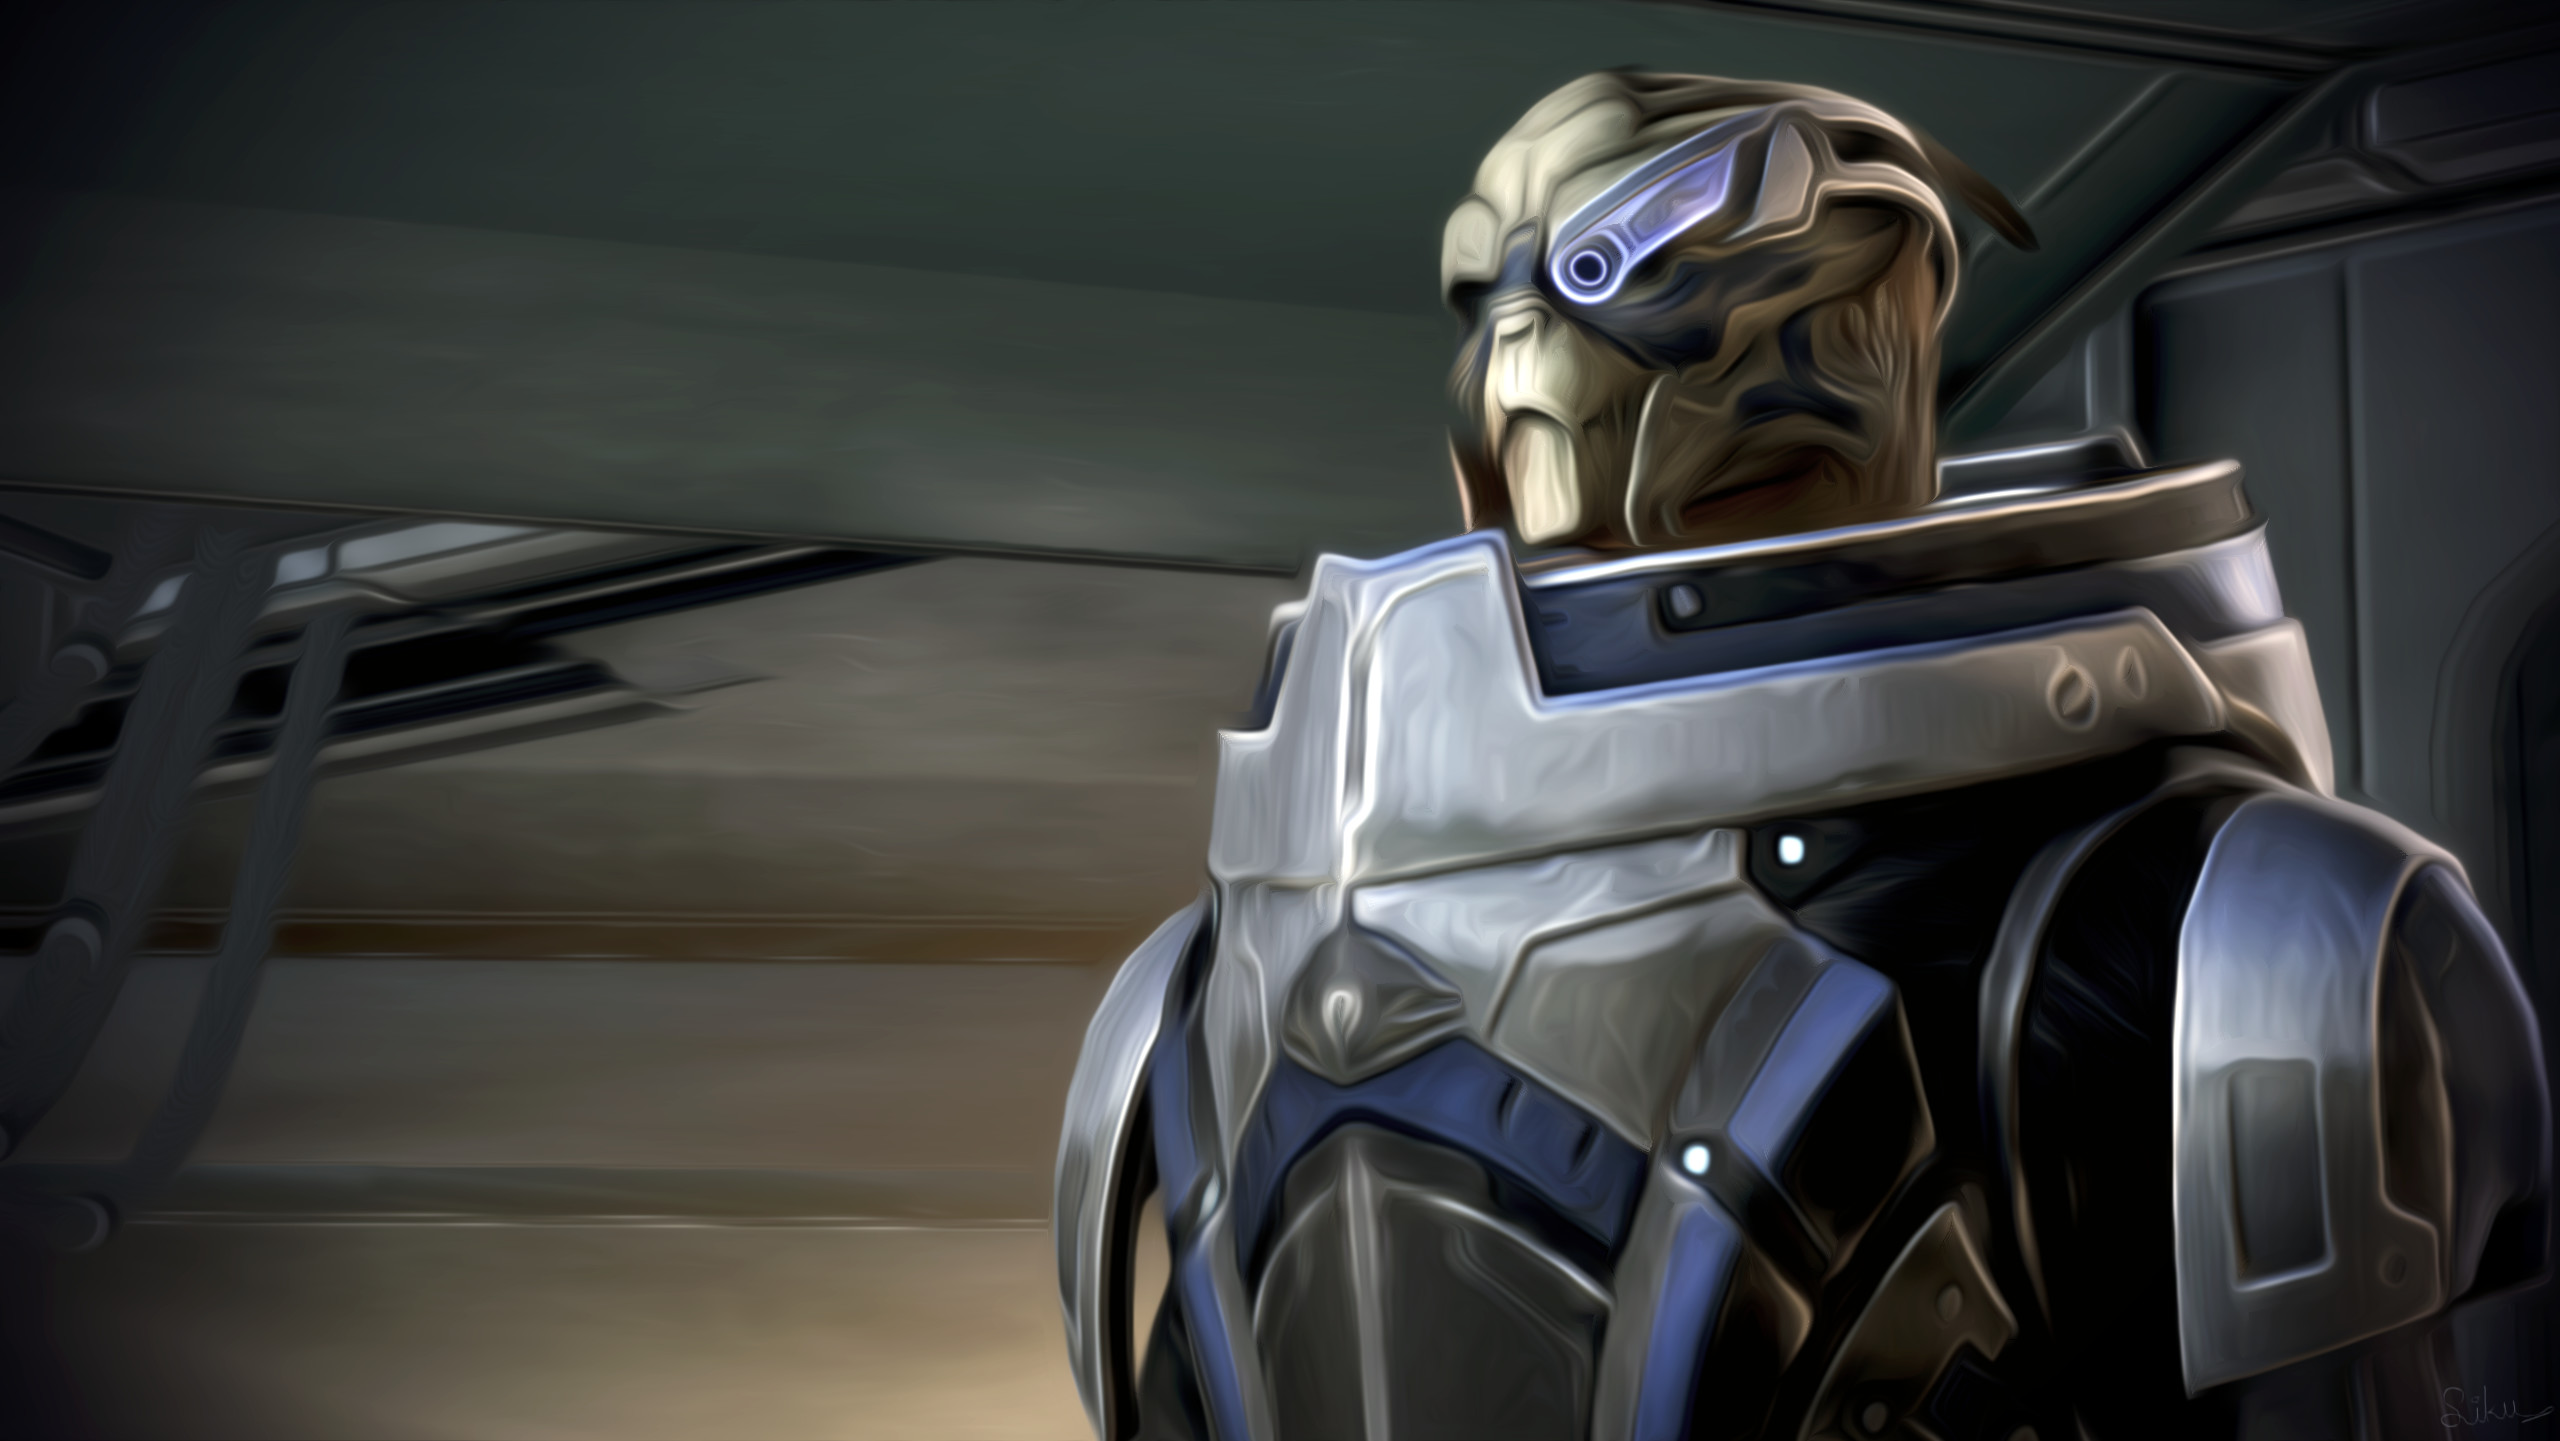 2560x1441 Video Game - Mass Effect 3 Garrus Vakarian Oil Painting Wallpaper